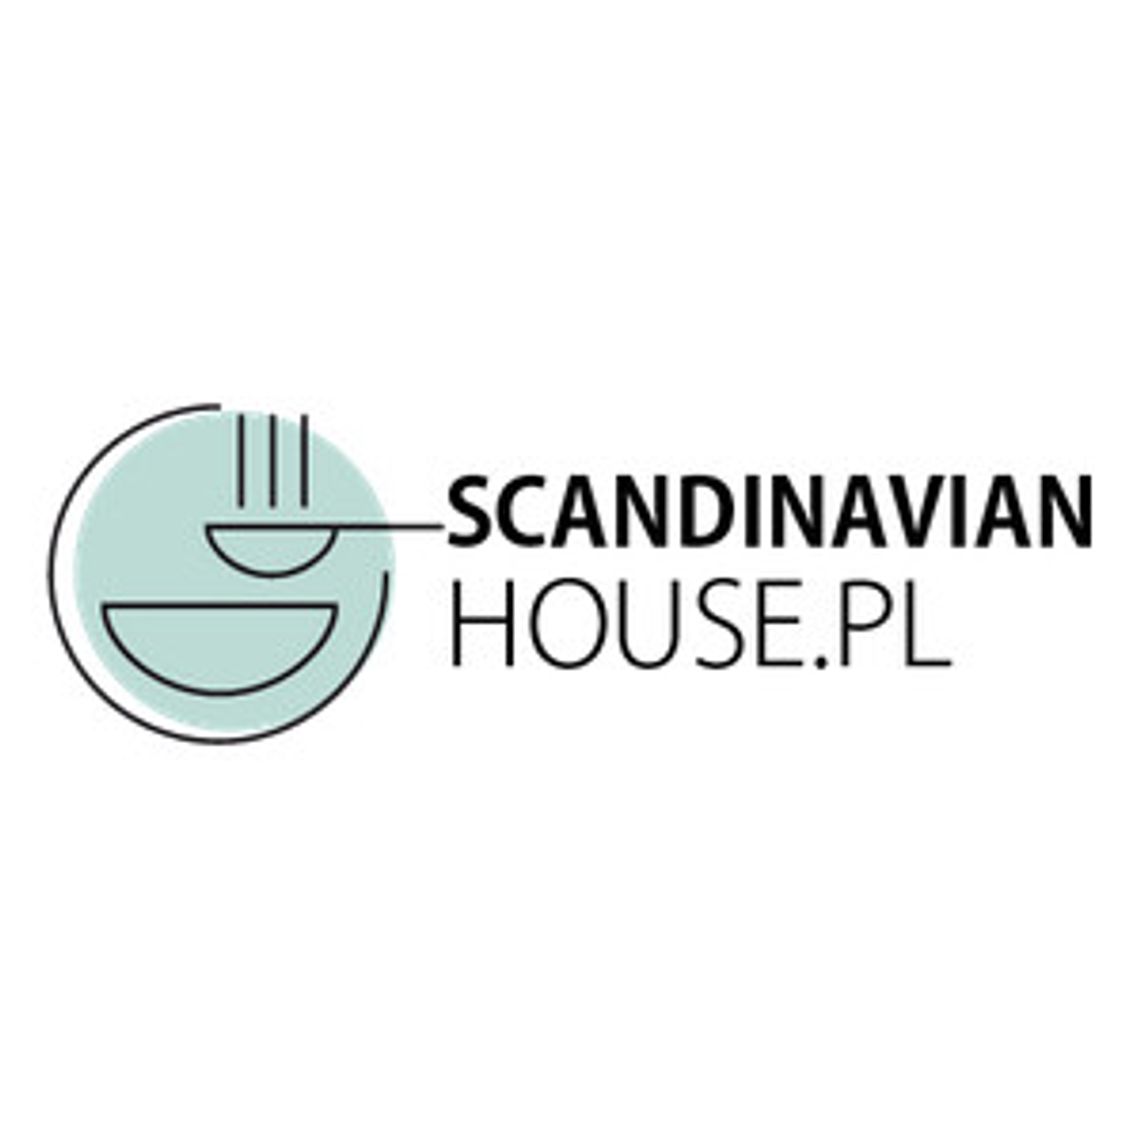 ScandinavianHouse